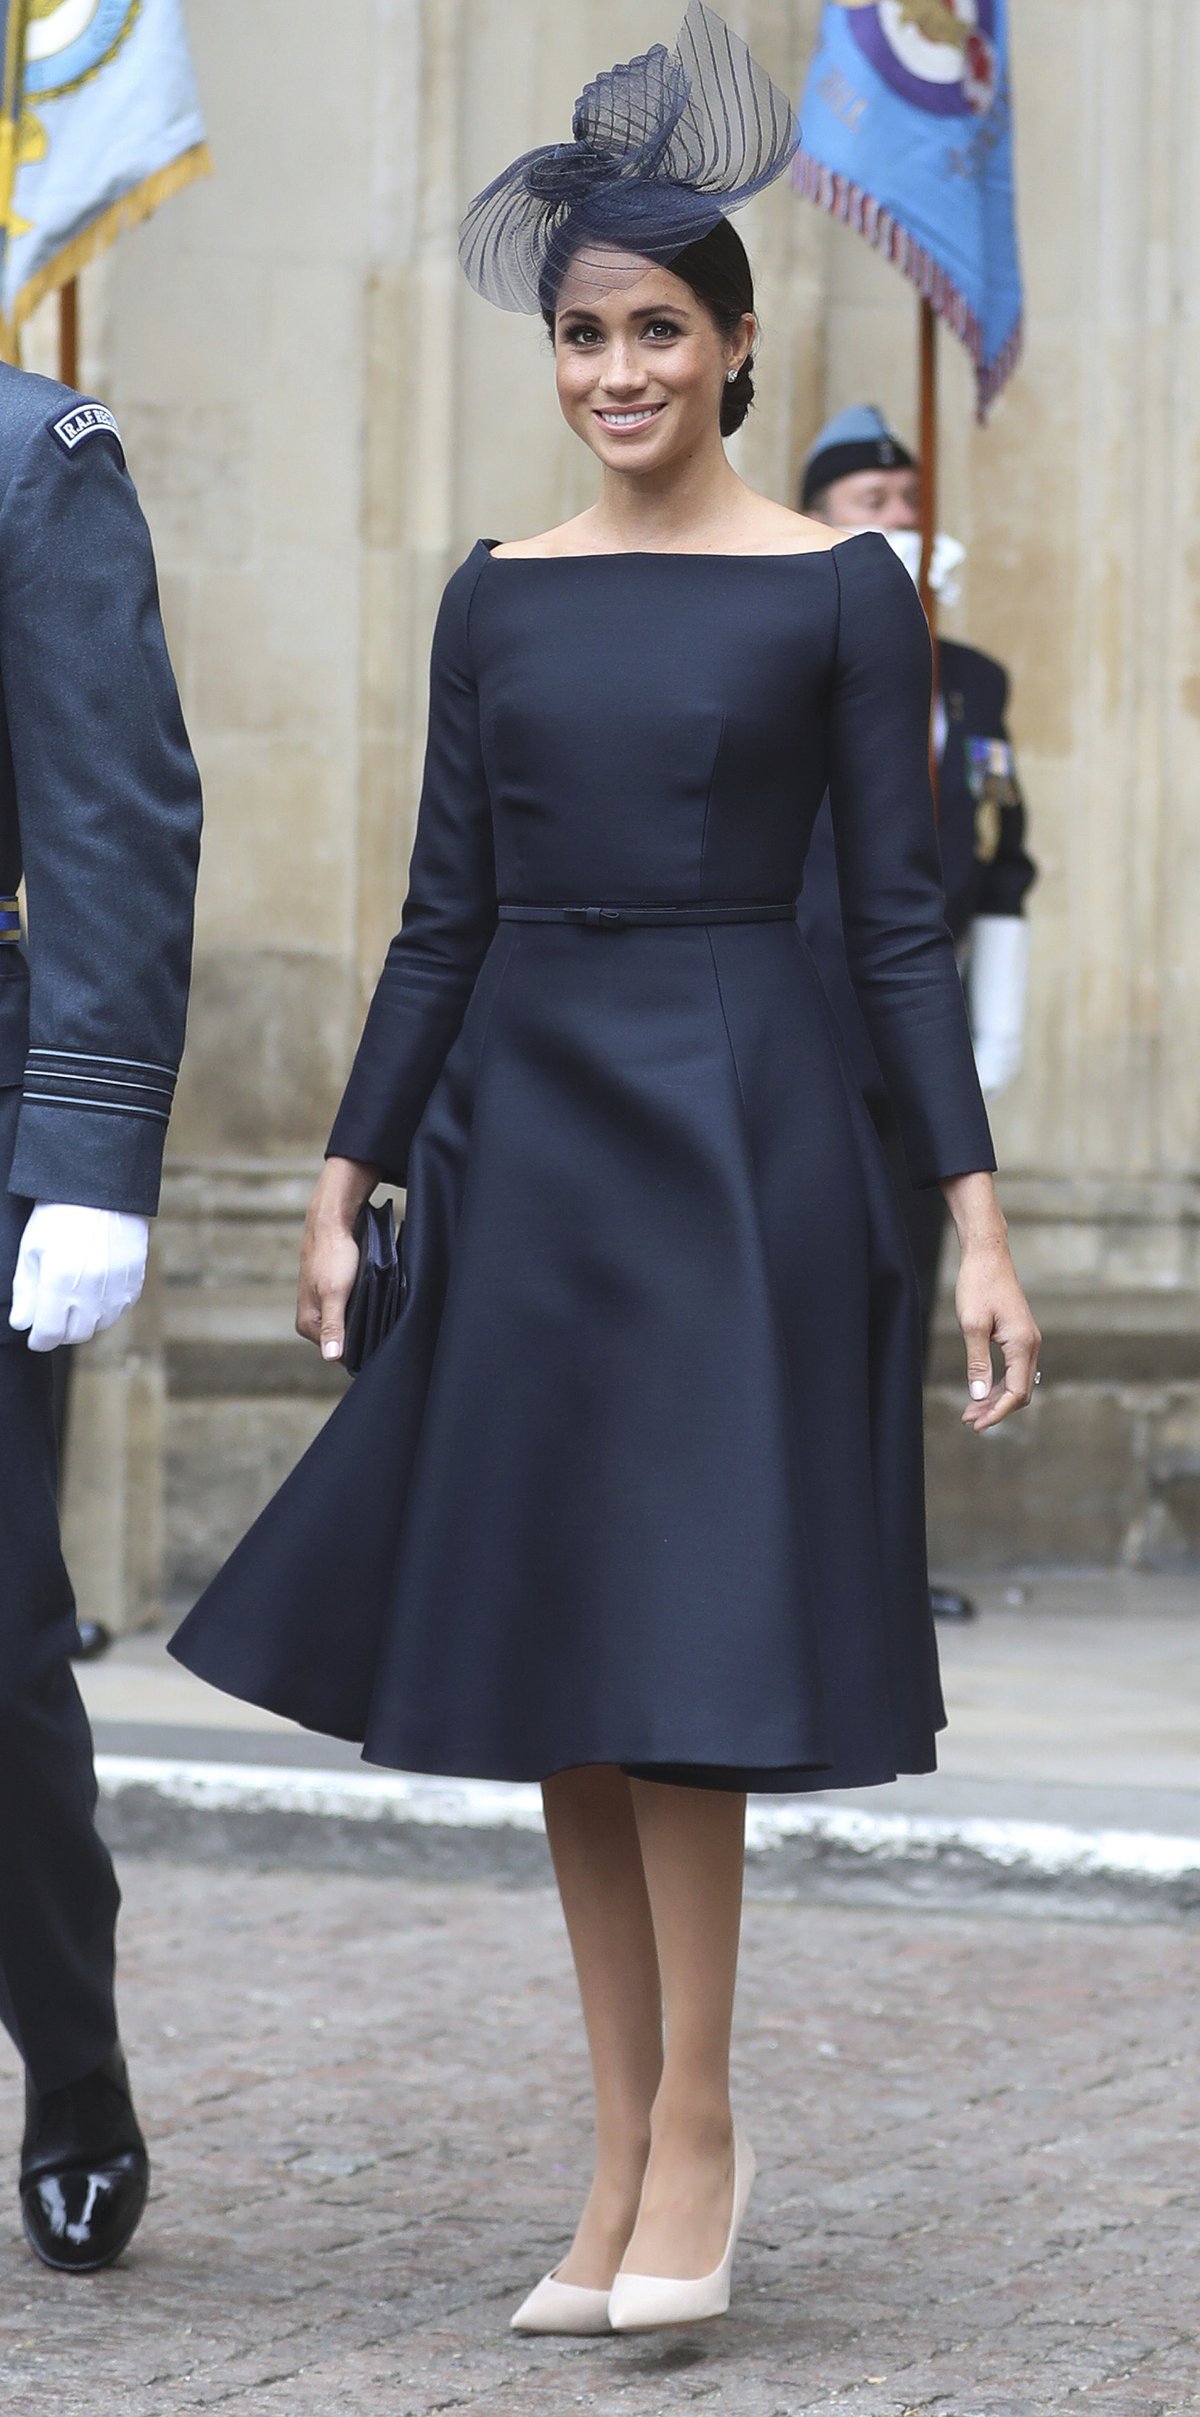 Vévodkyně ze Sussexu ohromila odborníky na módu